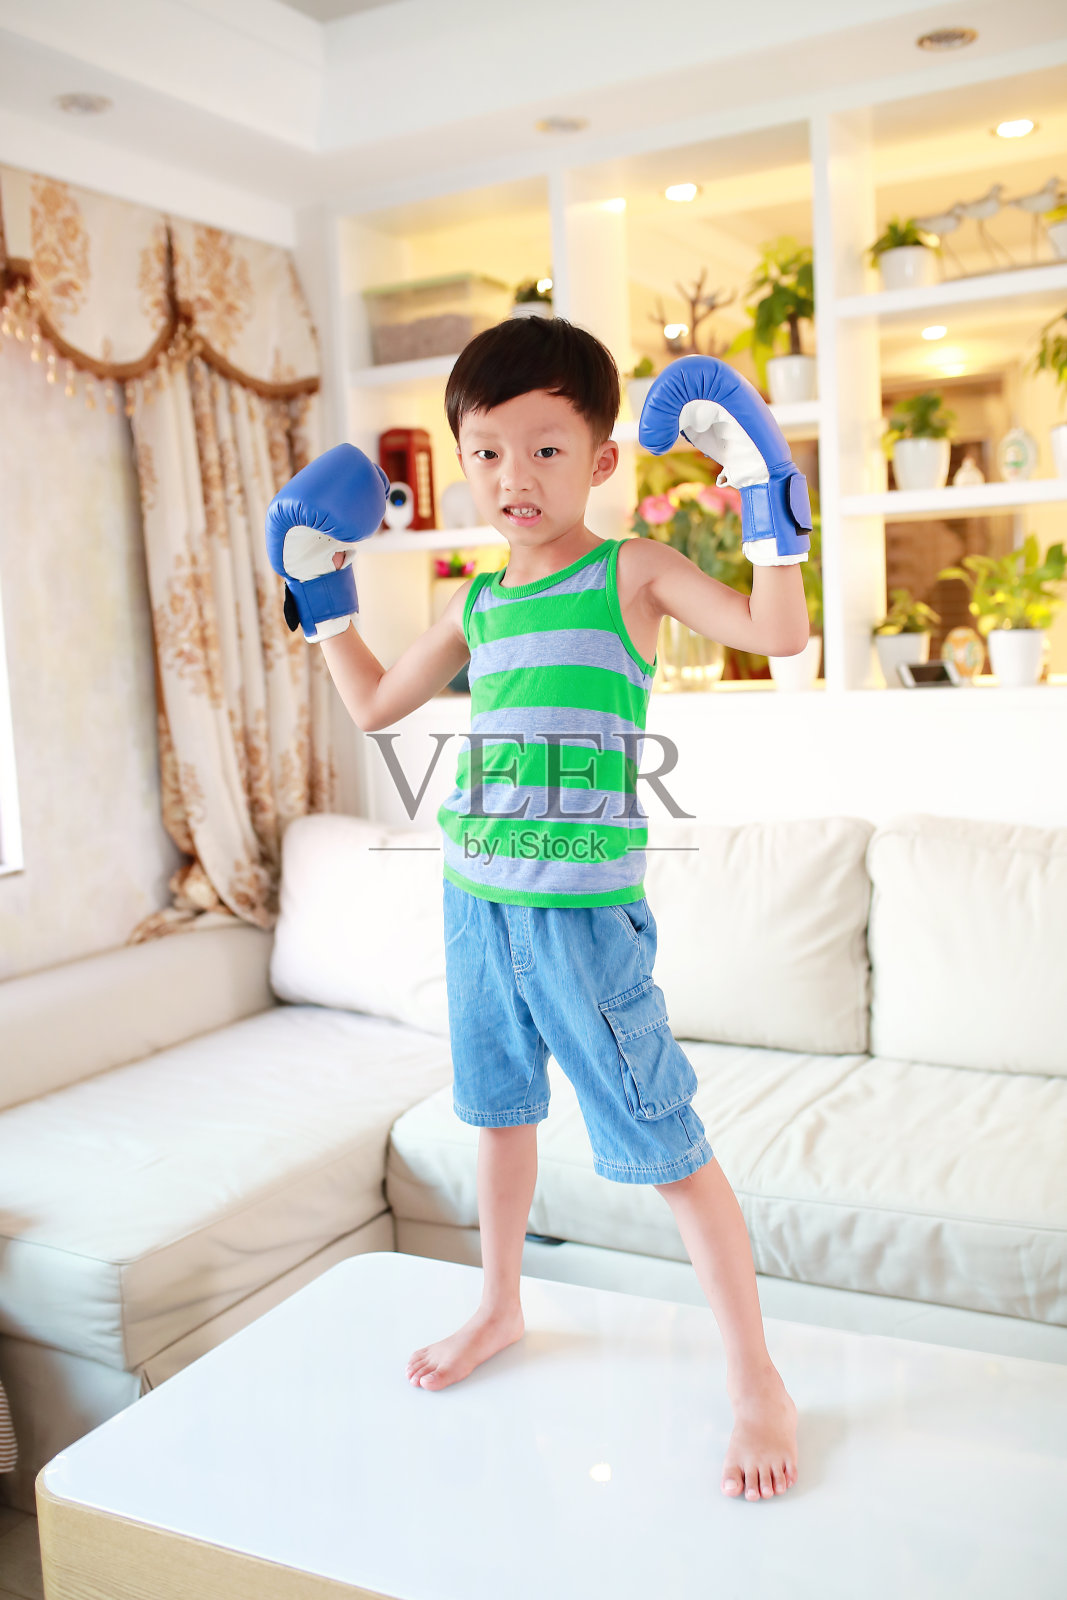 可爱的男孩拳击照片摄影图片